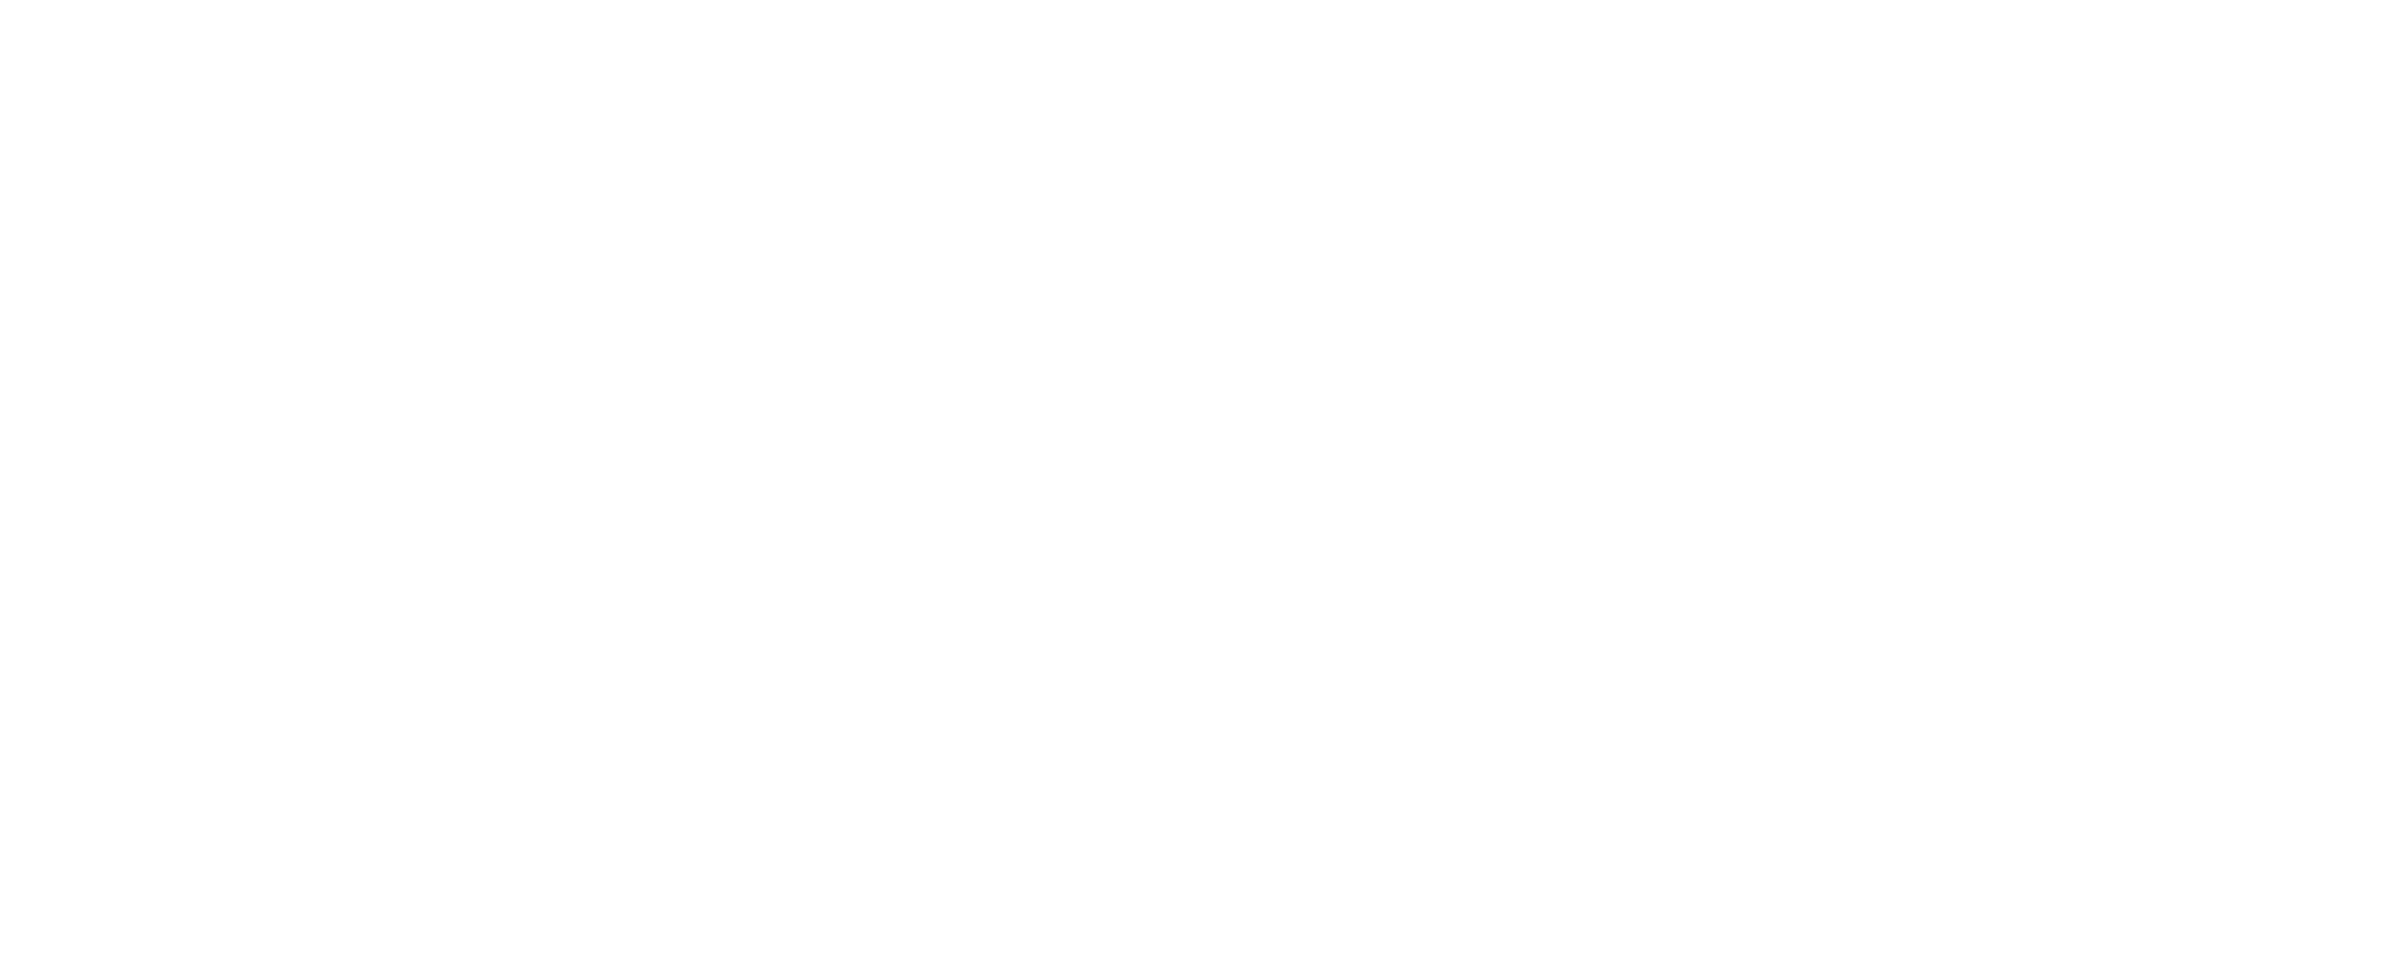 DreiMaster Maritim Logo